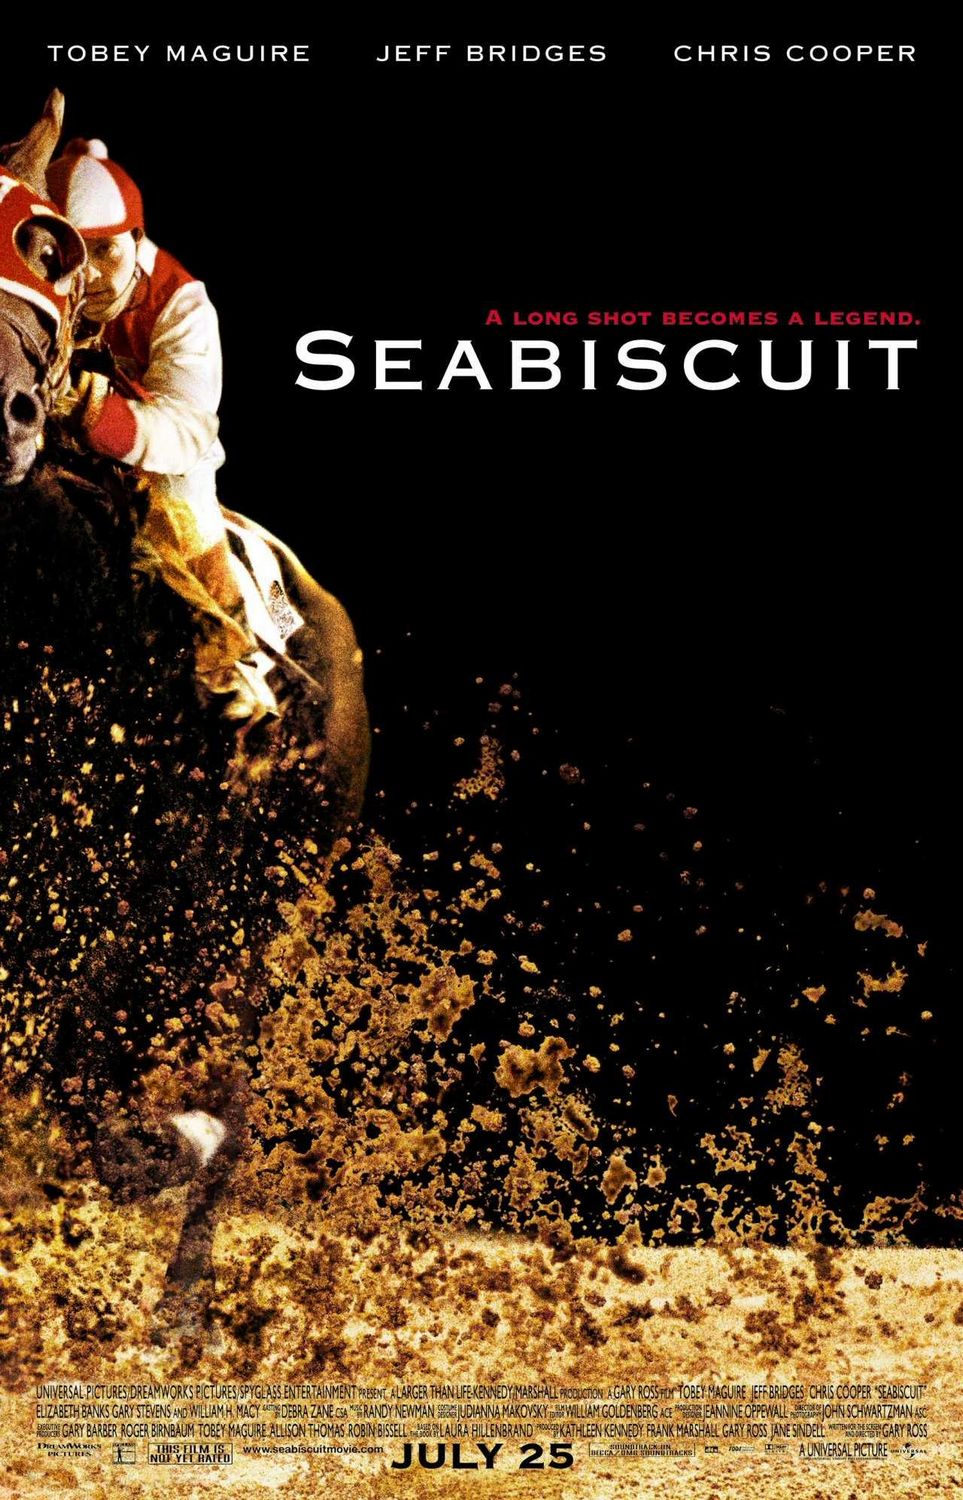 ดูหนังออนไลน์ฟรี Seabiscuit (2003) ซี บิสกิต ม้าพิชิตโลก